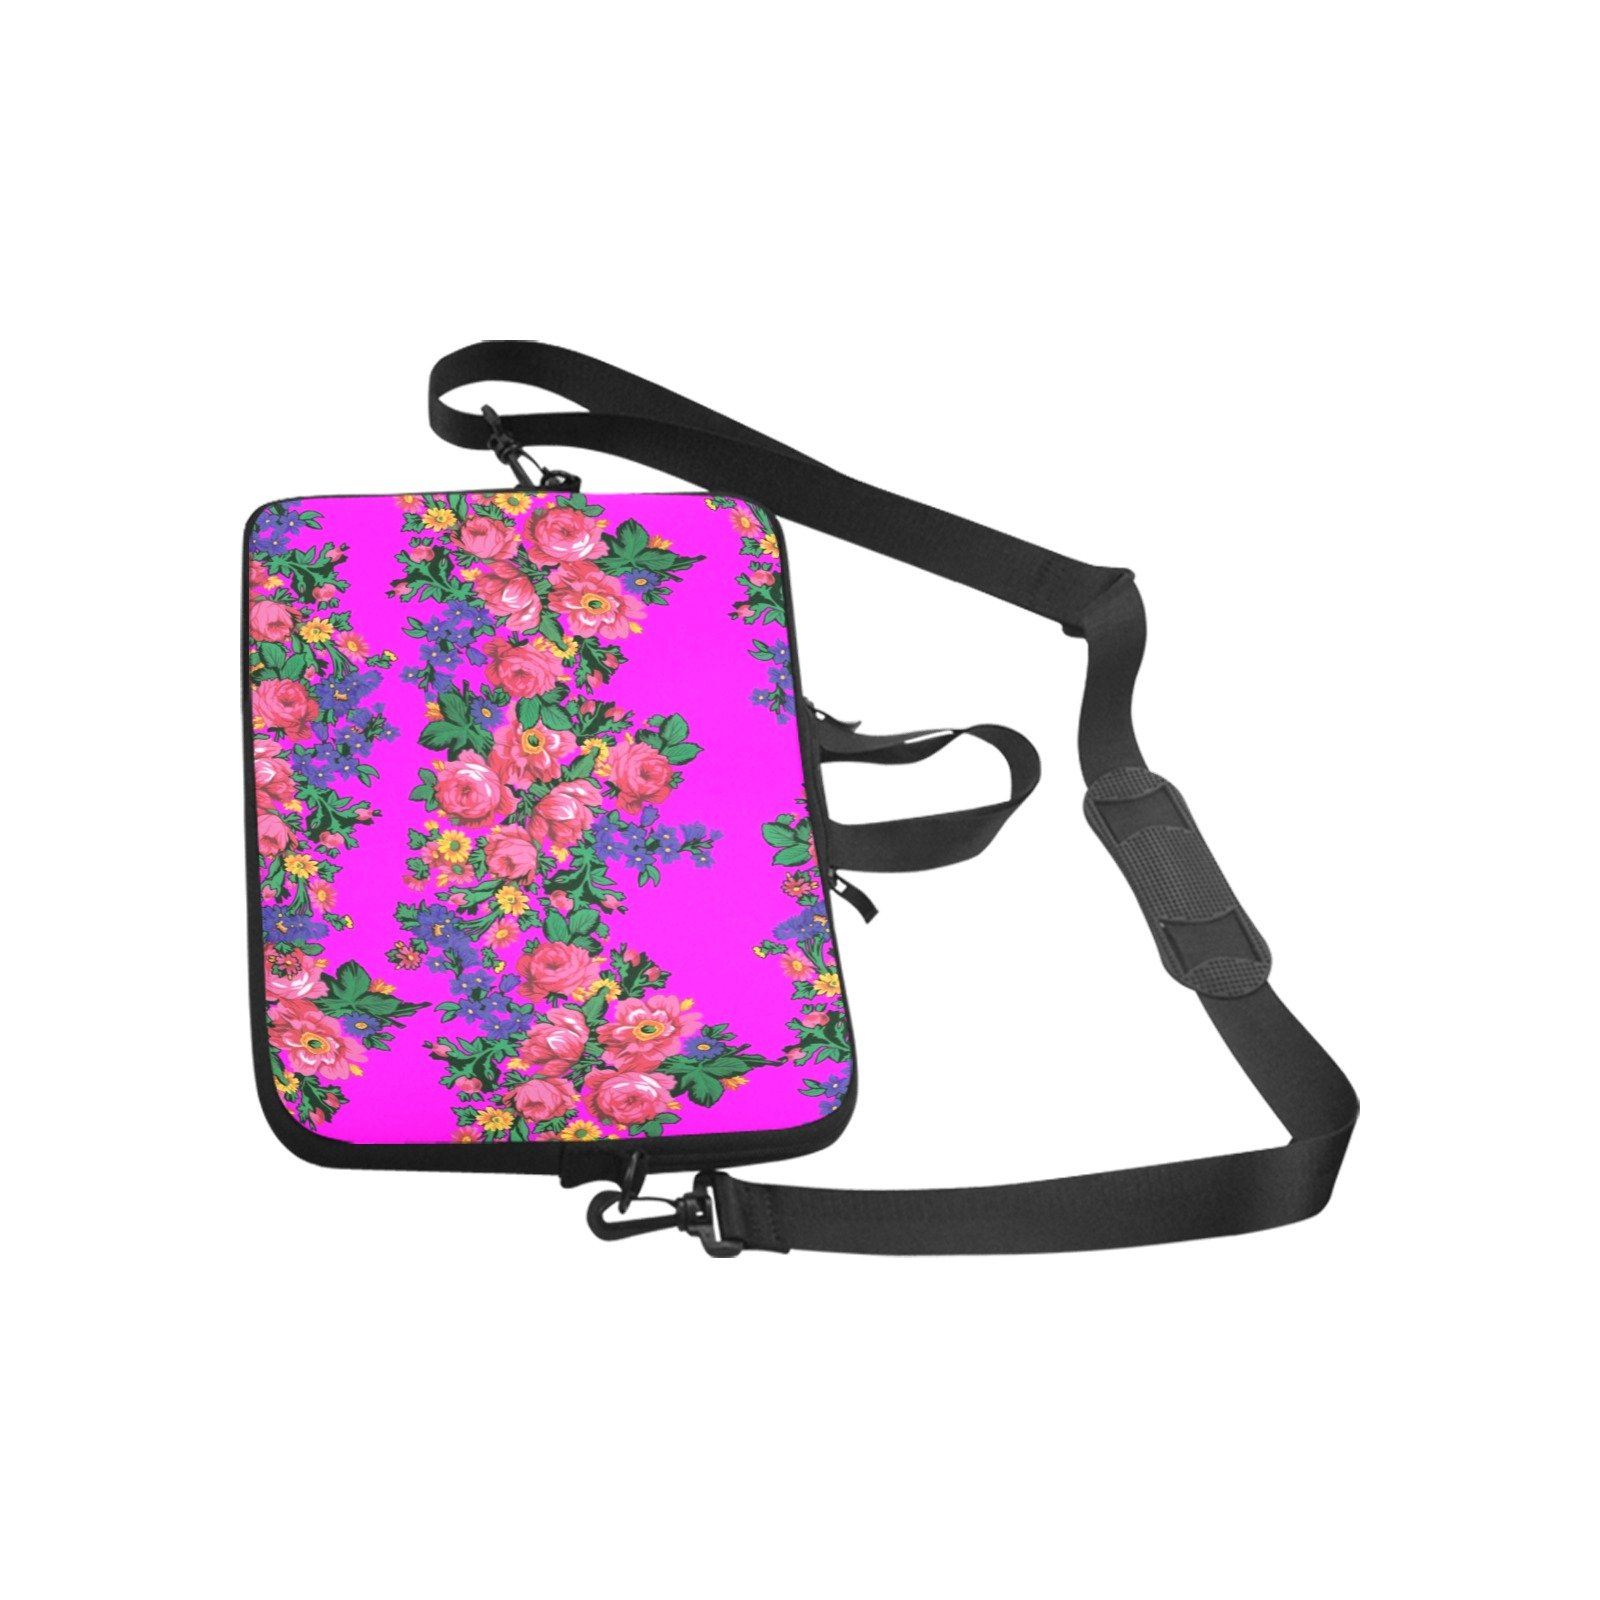 Kokum's Revenge Blush Laptop Handbags 10" bag e-joyer 